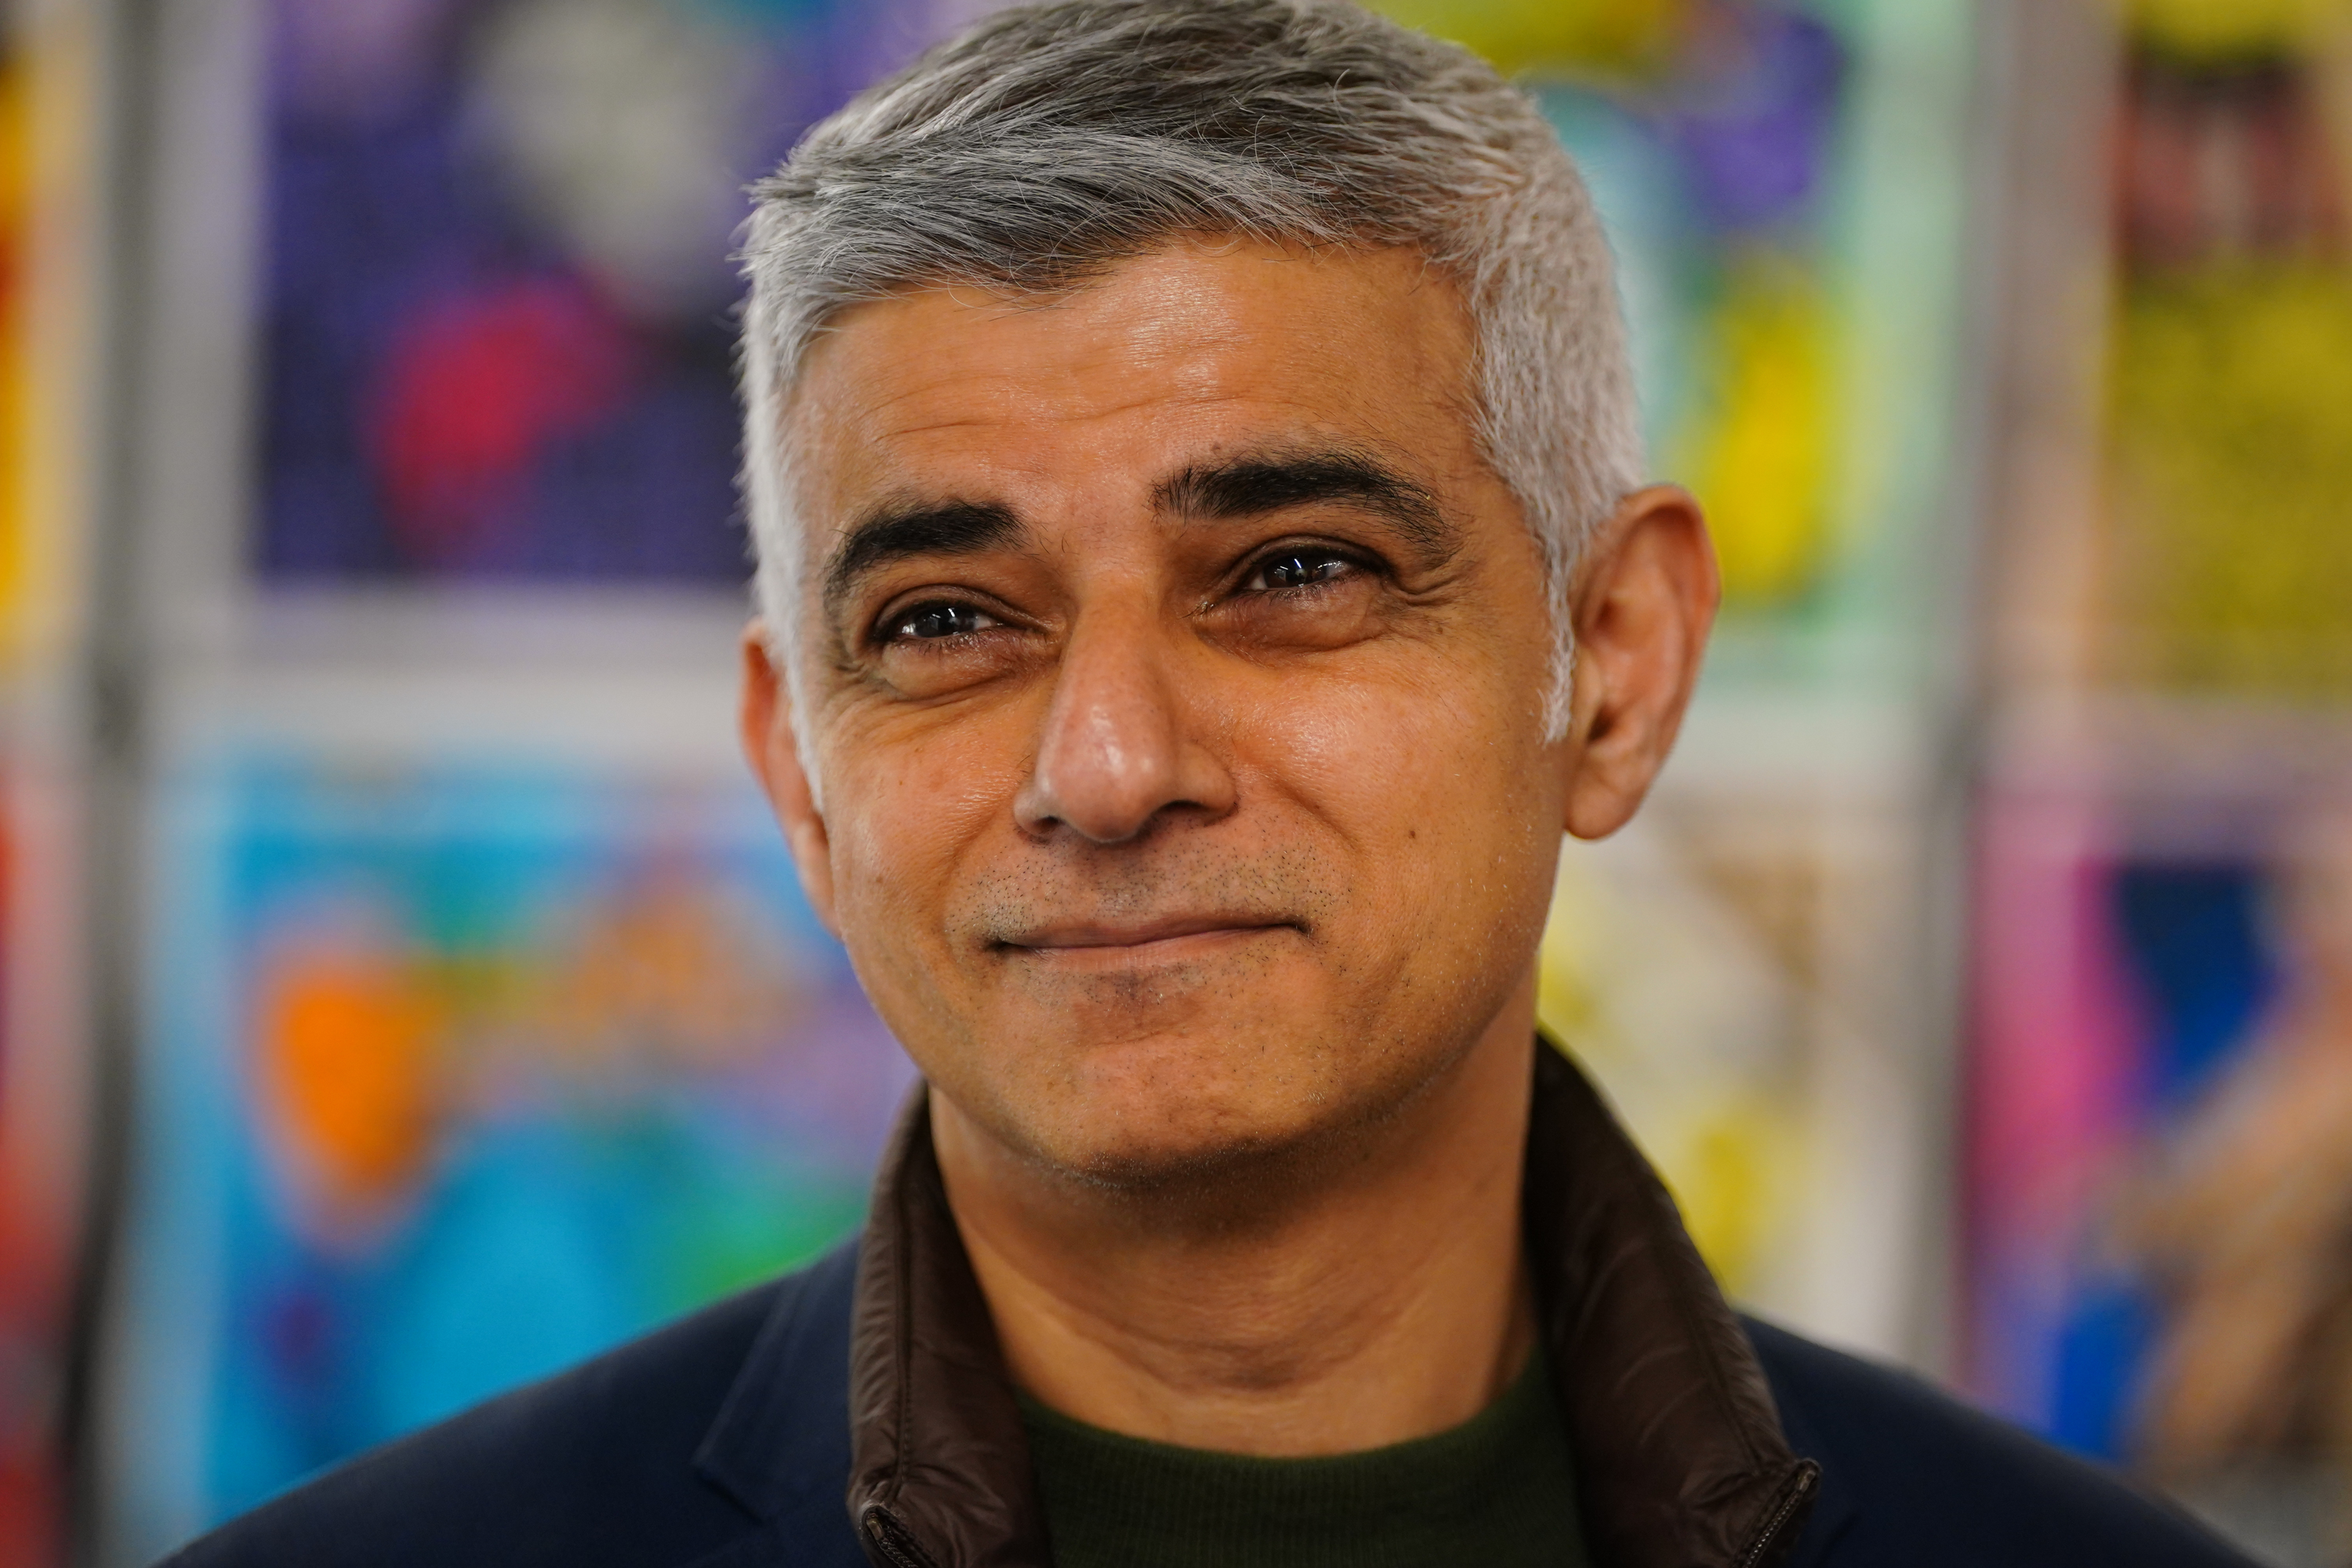 Der amtierende Labour-Bürgermeister von London, Sadiq Khan